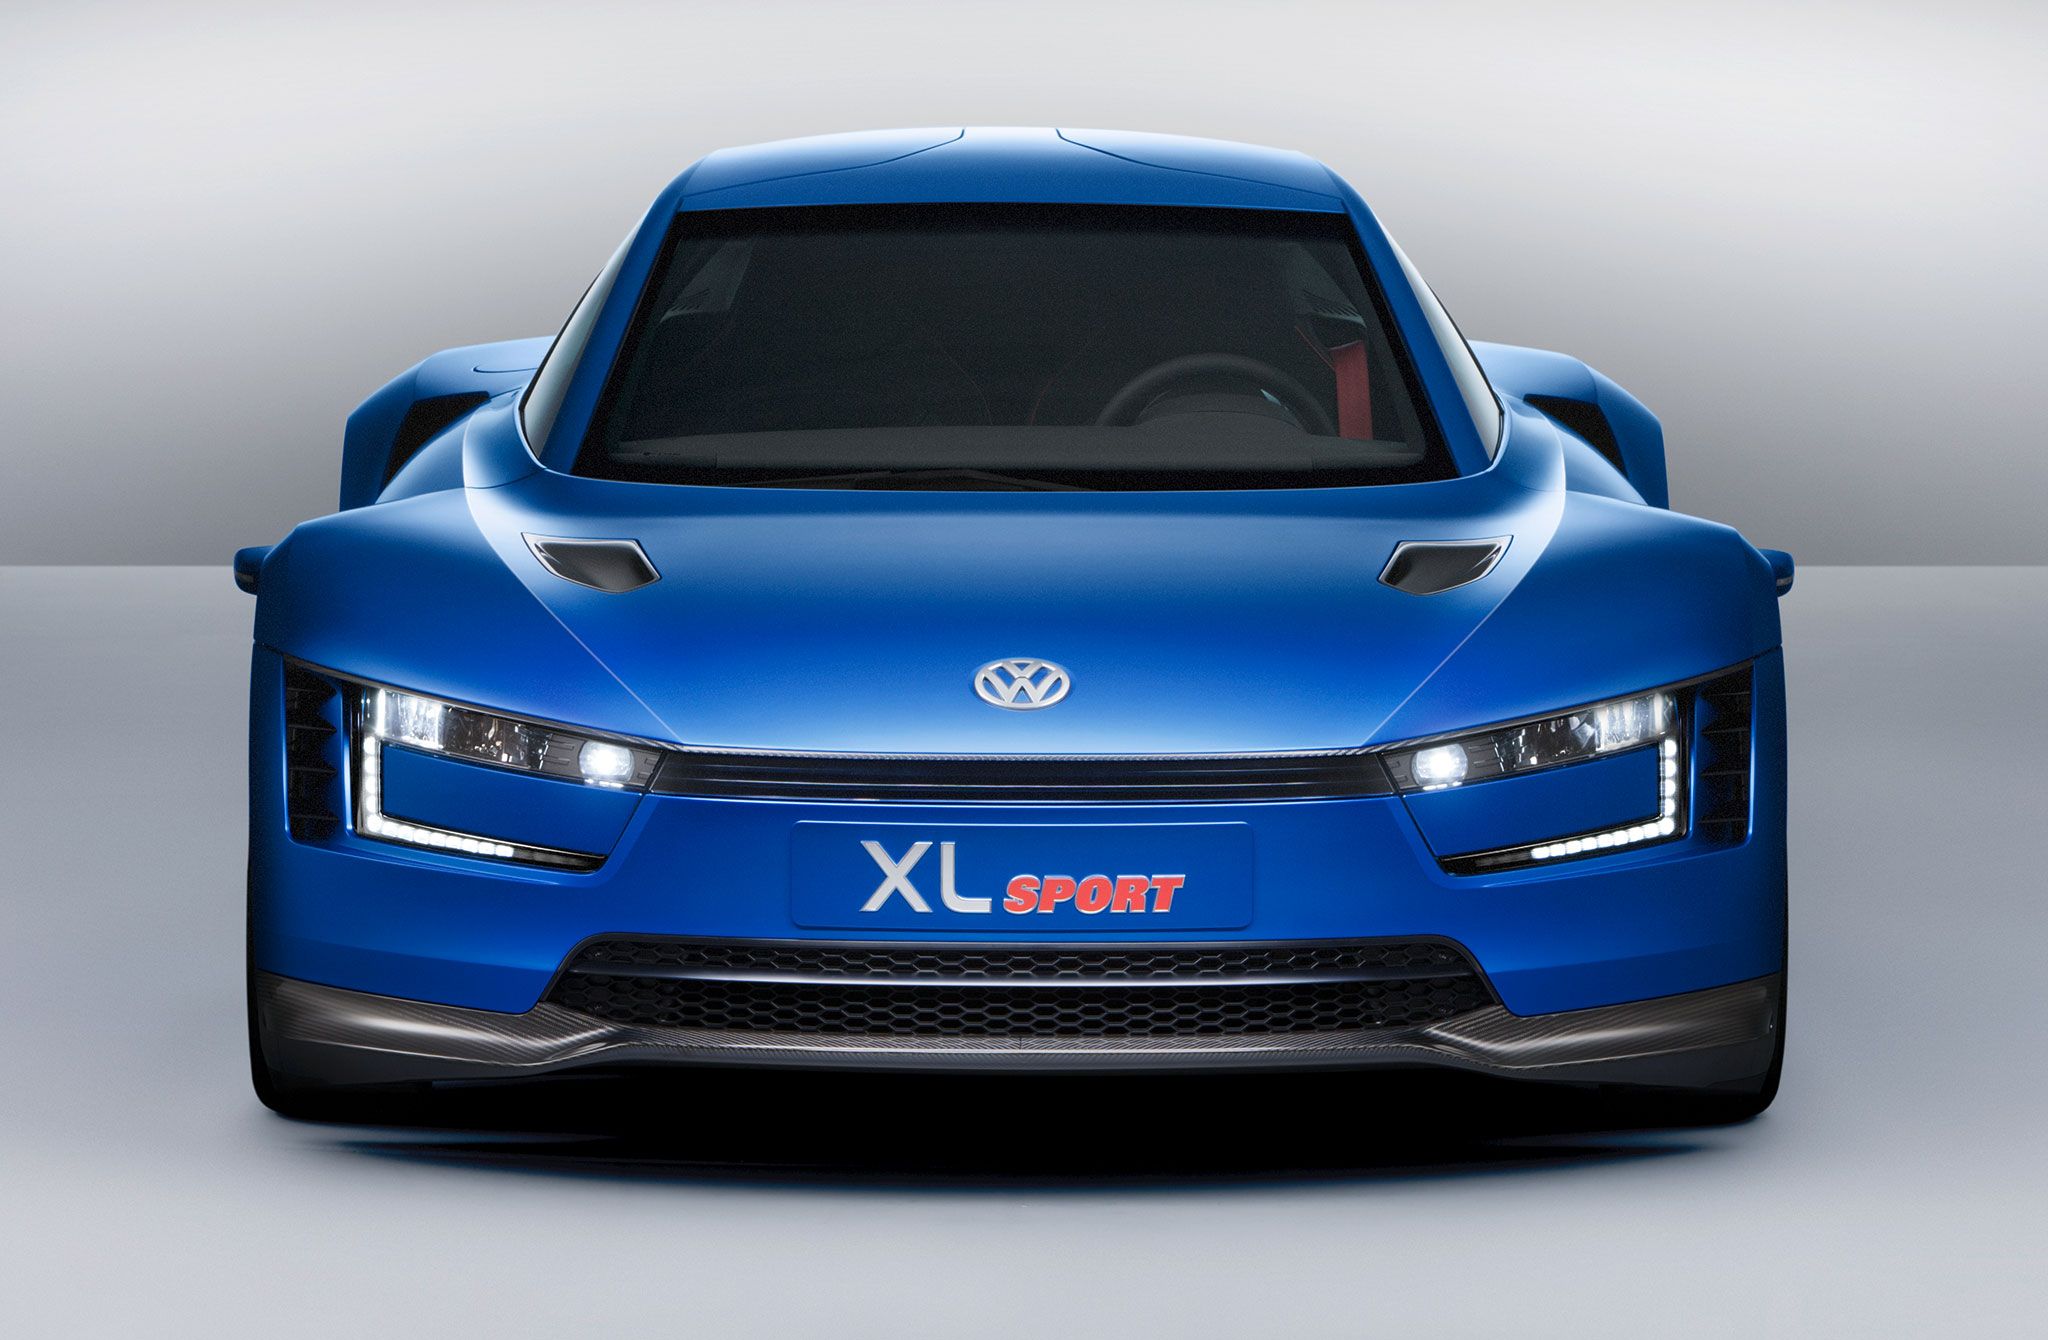 Volkswagen XL Sport HD wallpapers, Desktop wallpaper - most viewed